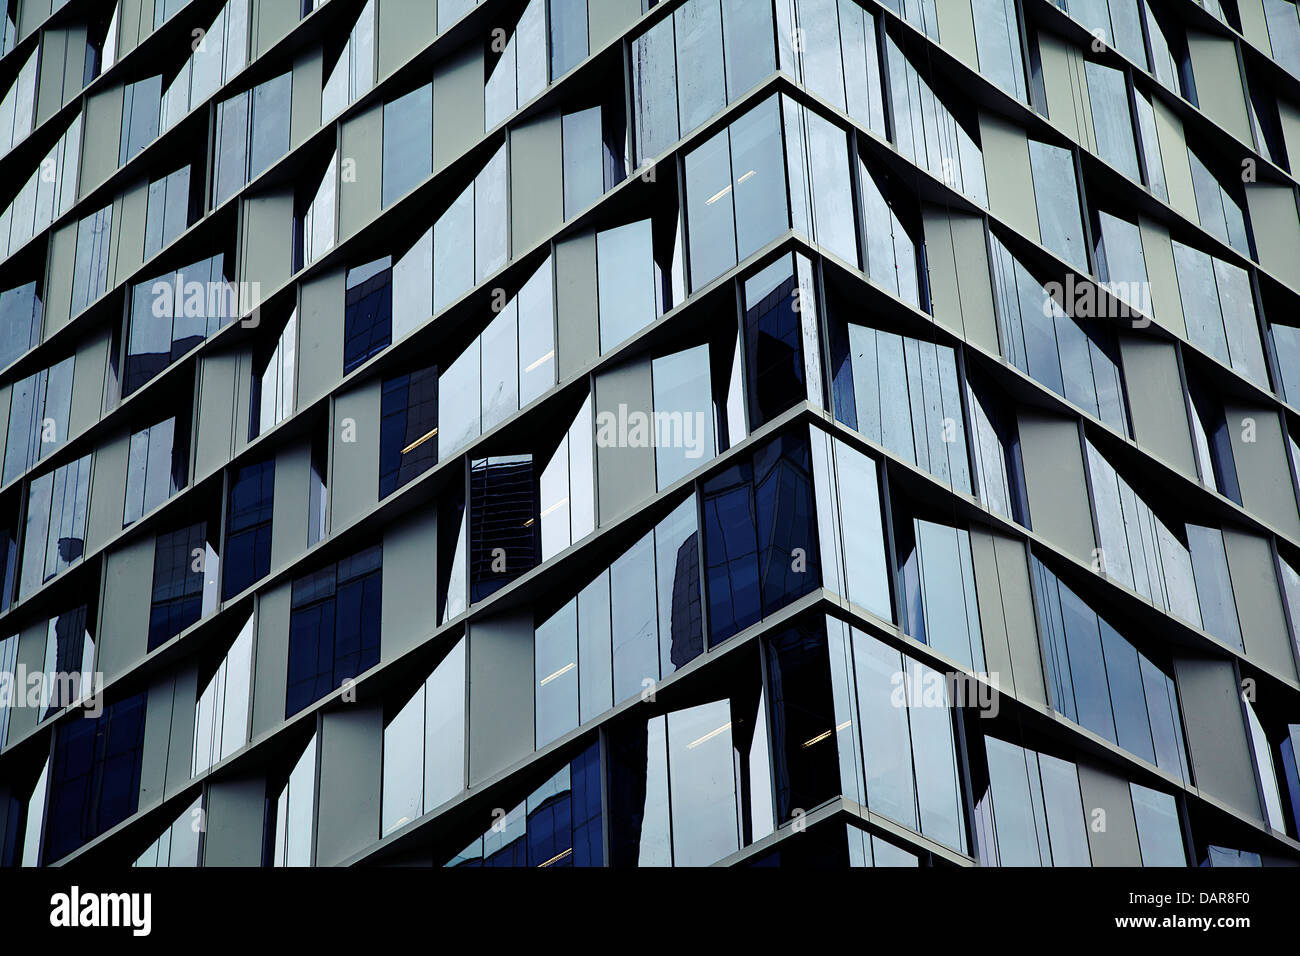 Buildings at Santiago de Chile Stock Photo